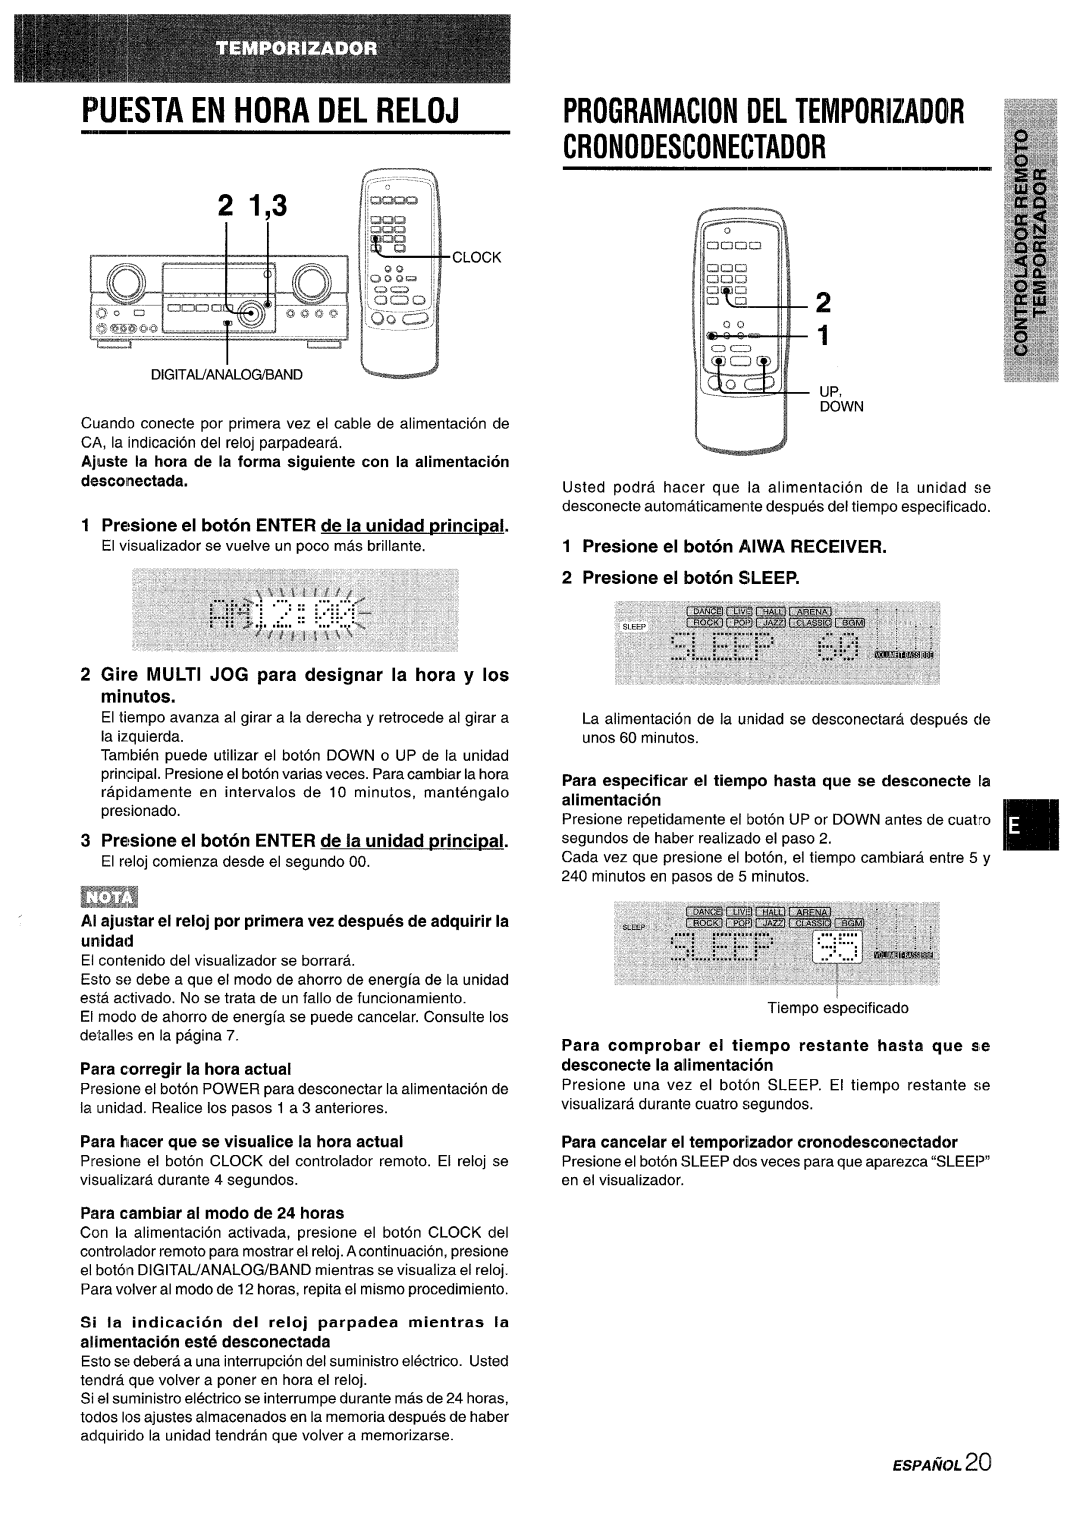 Sony AV-DV75 manual Cronodesconectador, Programaciondeltemporizaiioir, Fwesta En Hora Del Reloj, 21,3, alimentacion 